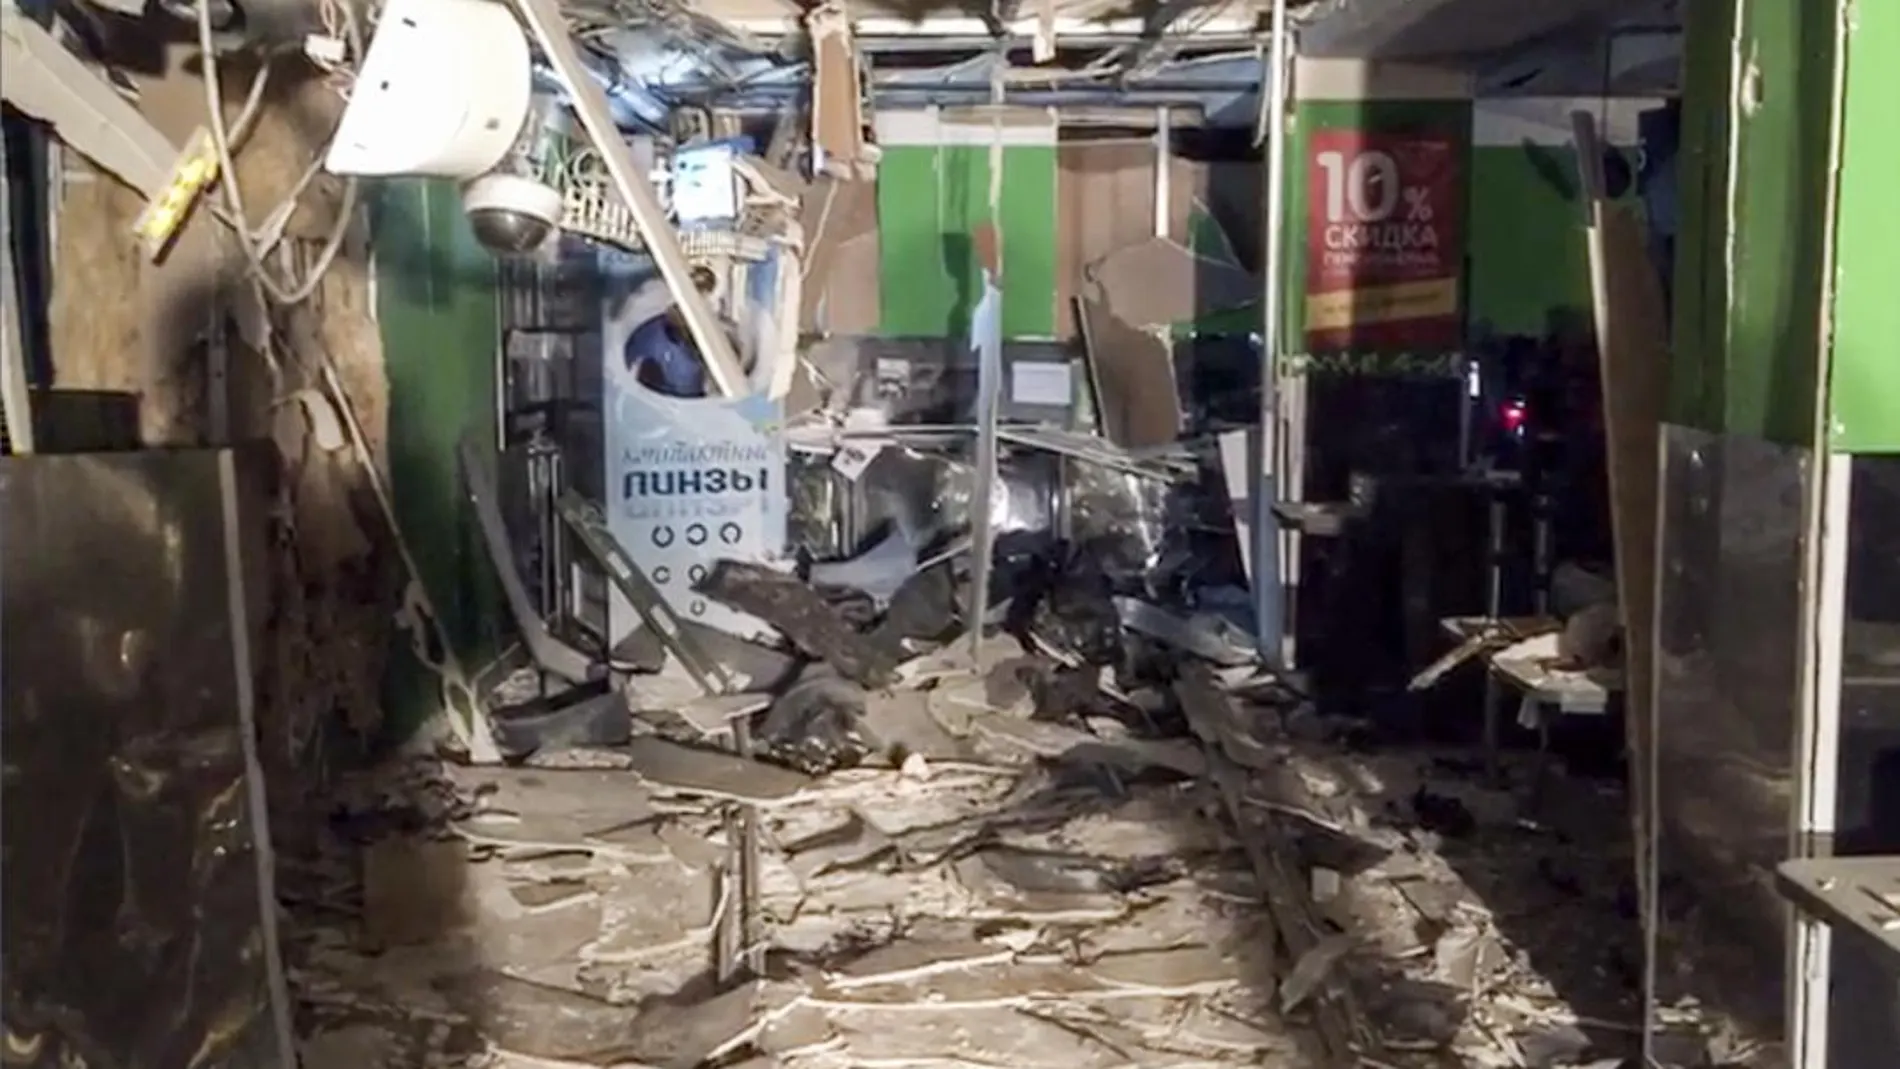 El supermercado tras la explosión